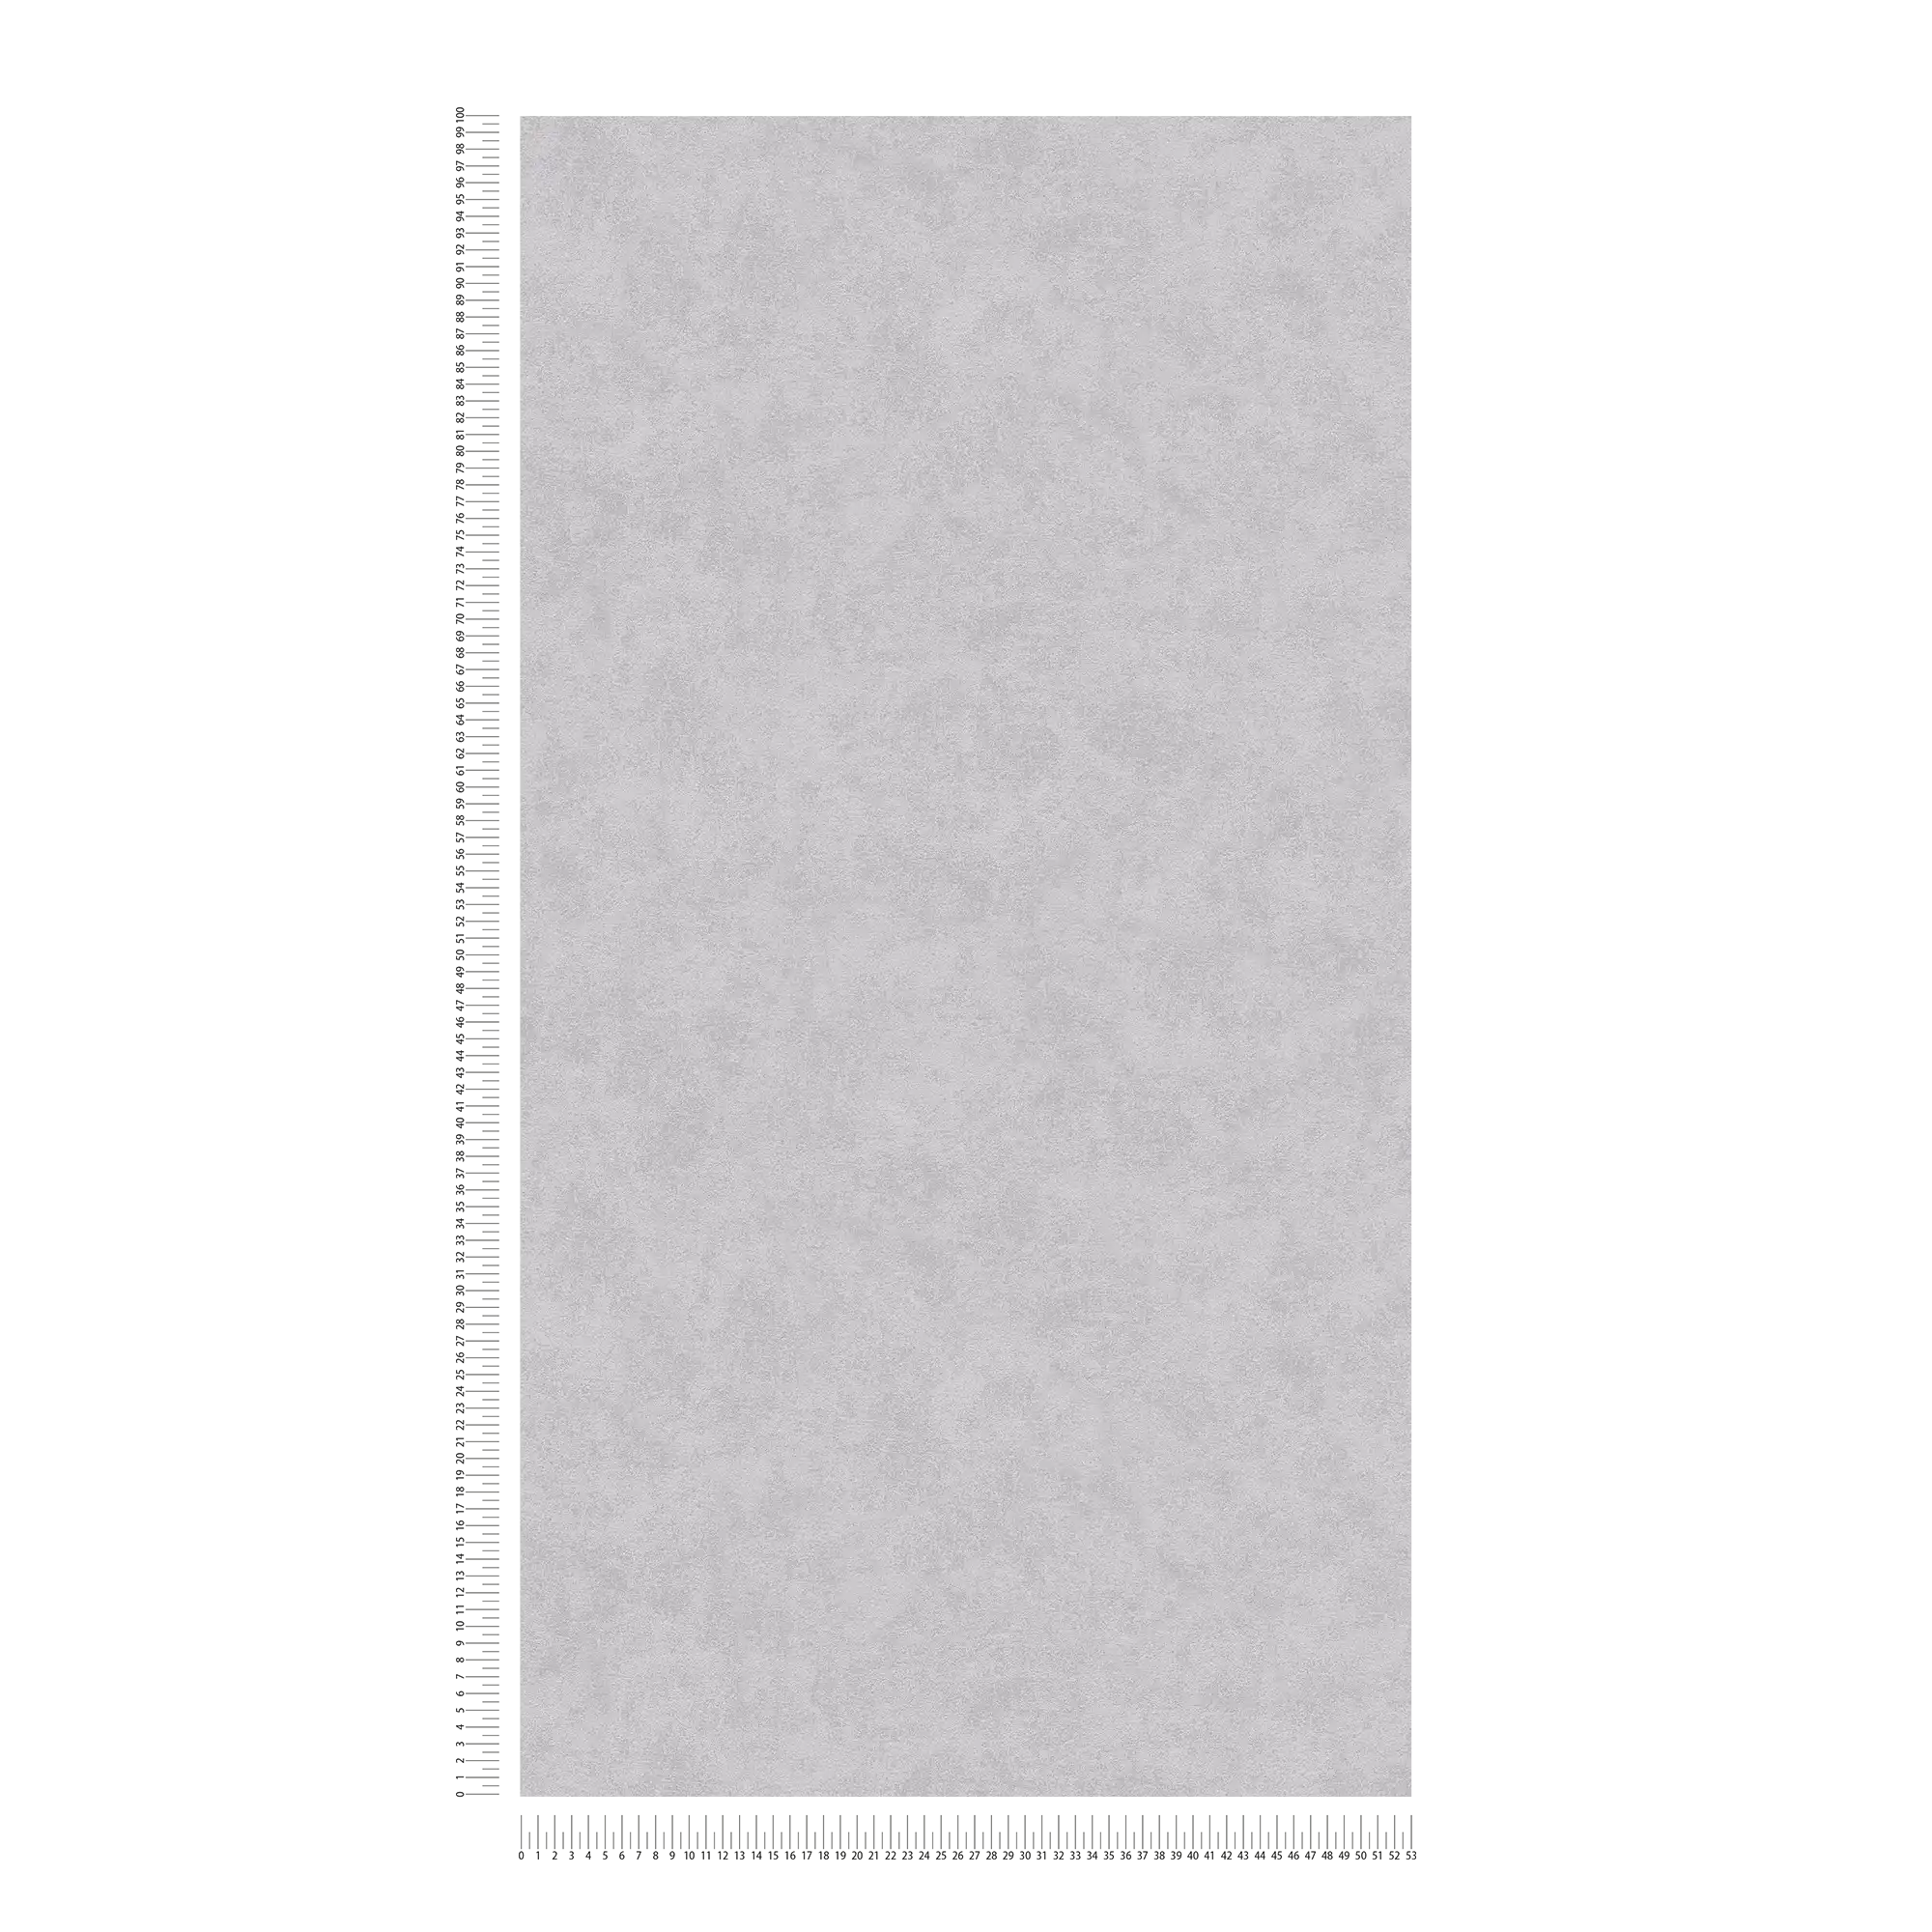             Carta da parati in tessuto non tessuto grigio cemento opaco con struttura in rilievo
        